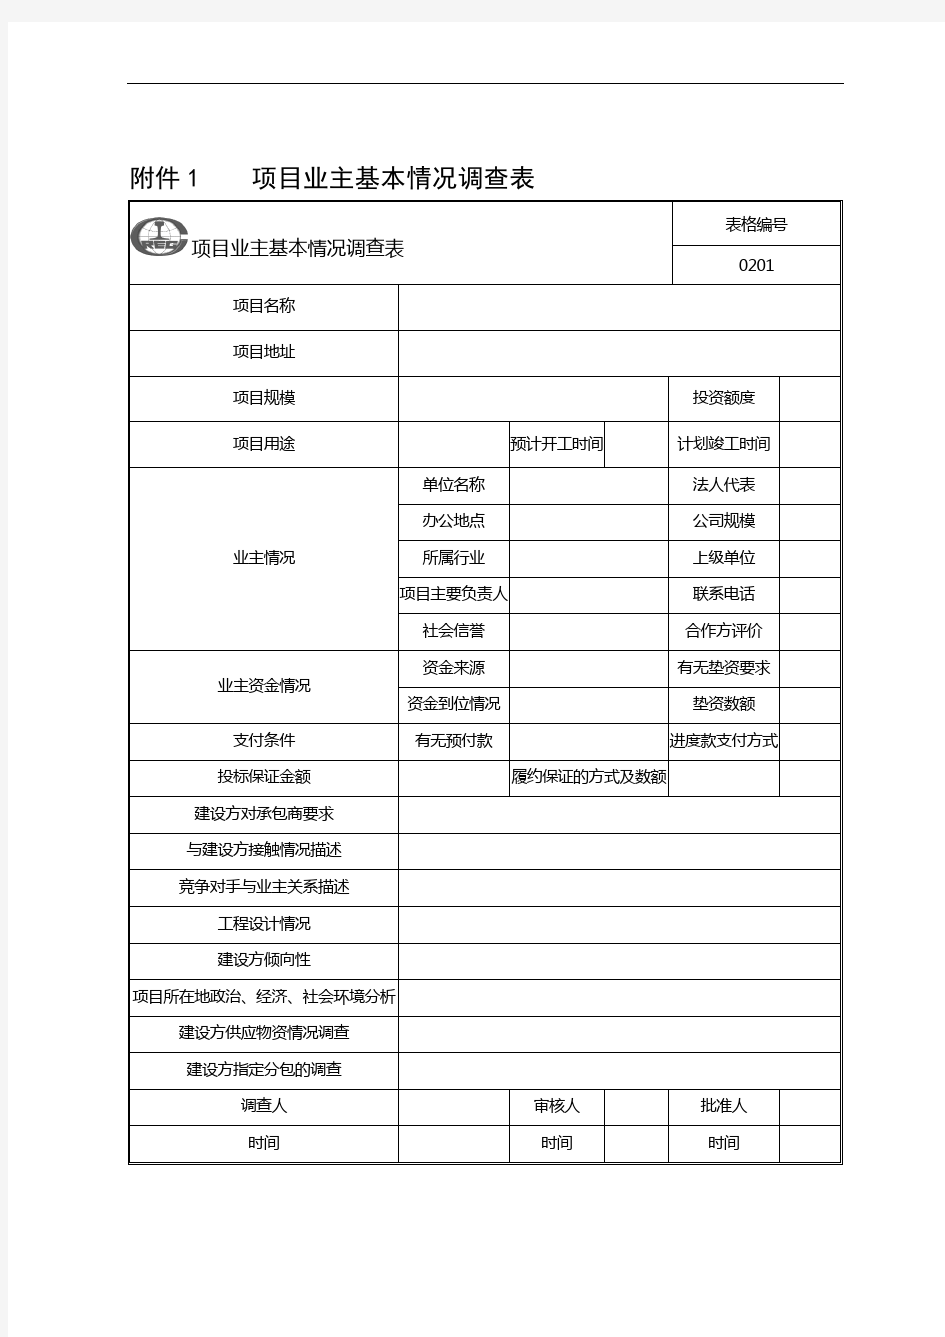 中国中铁股份有限公司工程项目精细化管理办法》的通知-附件